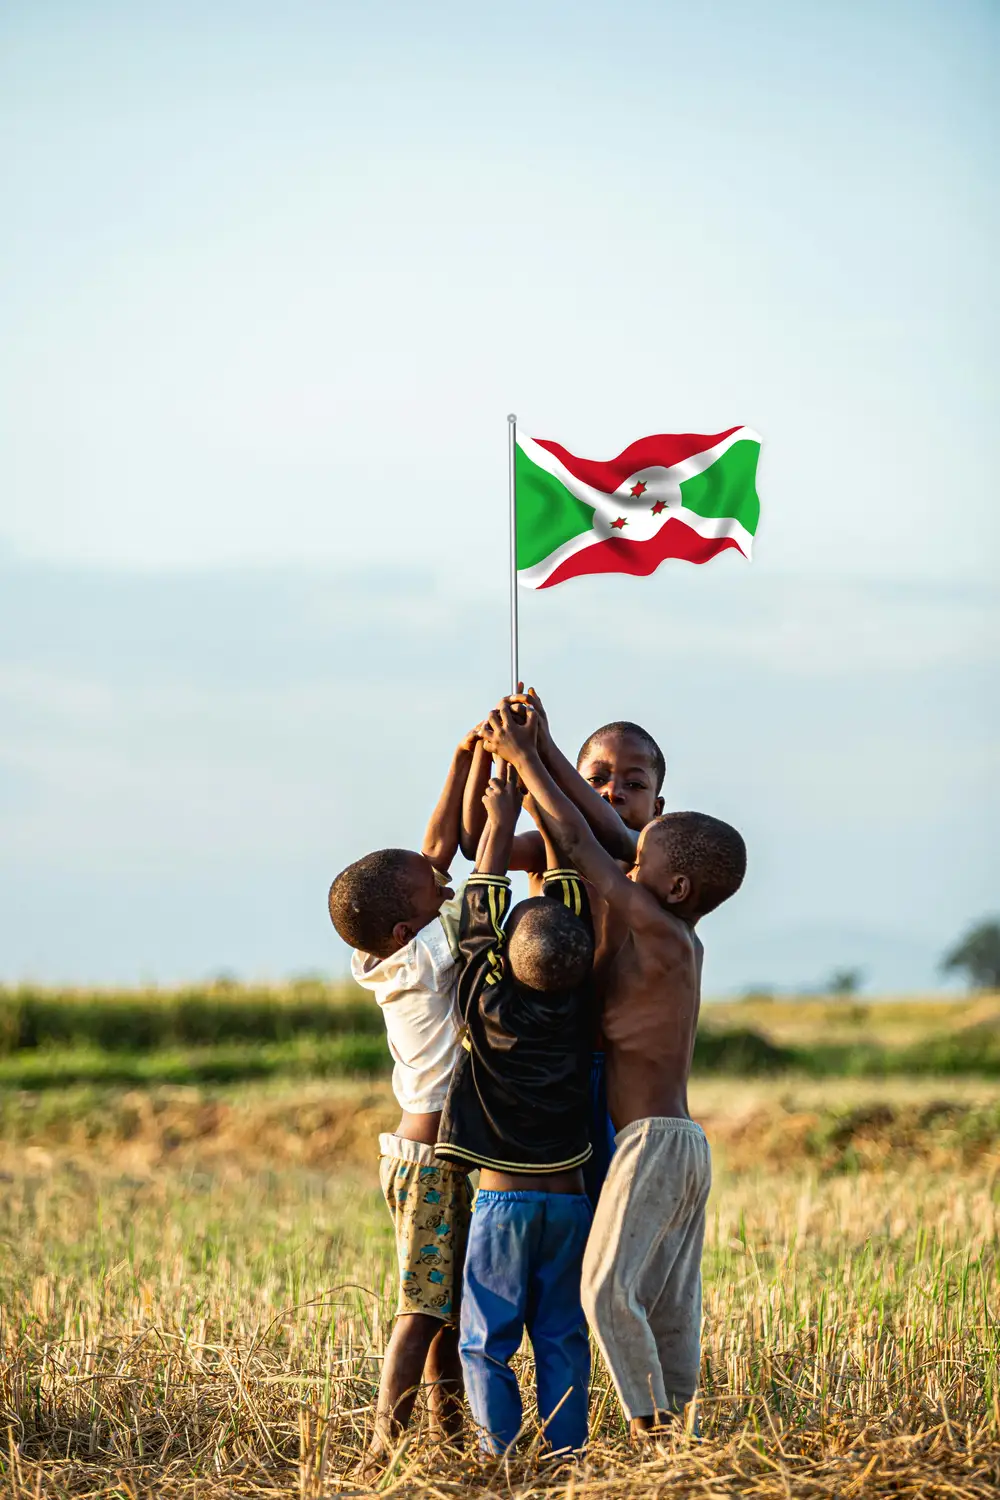 children holding a flag